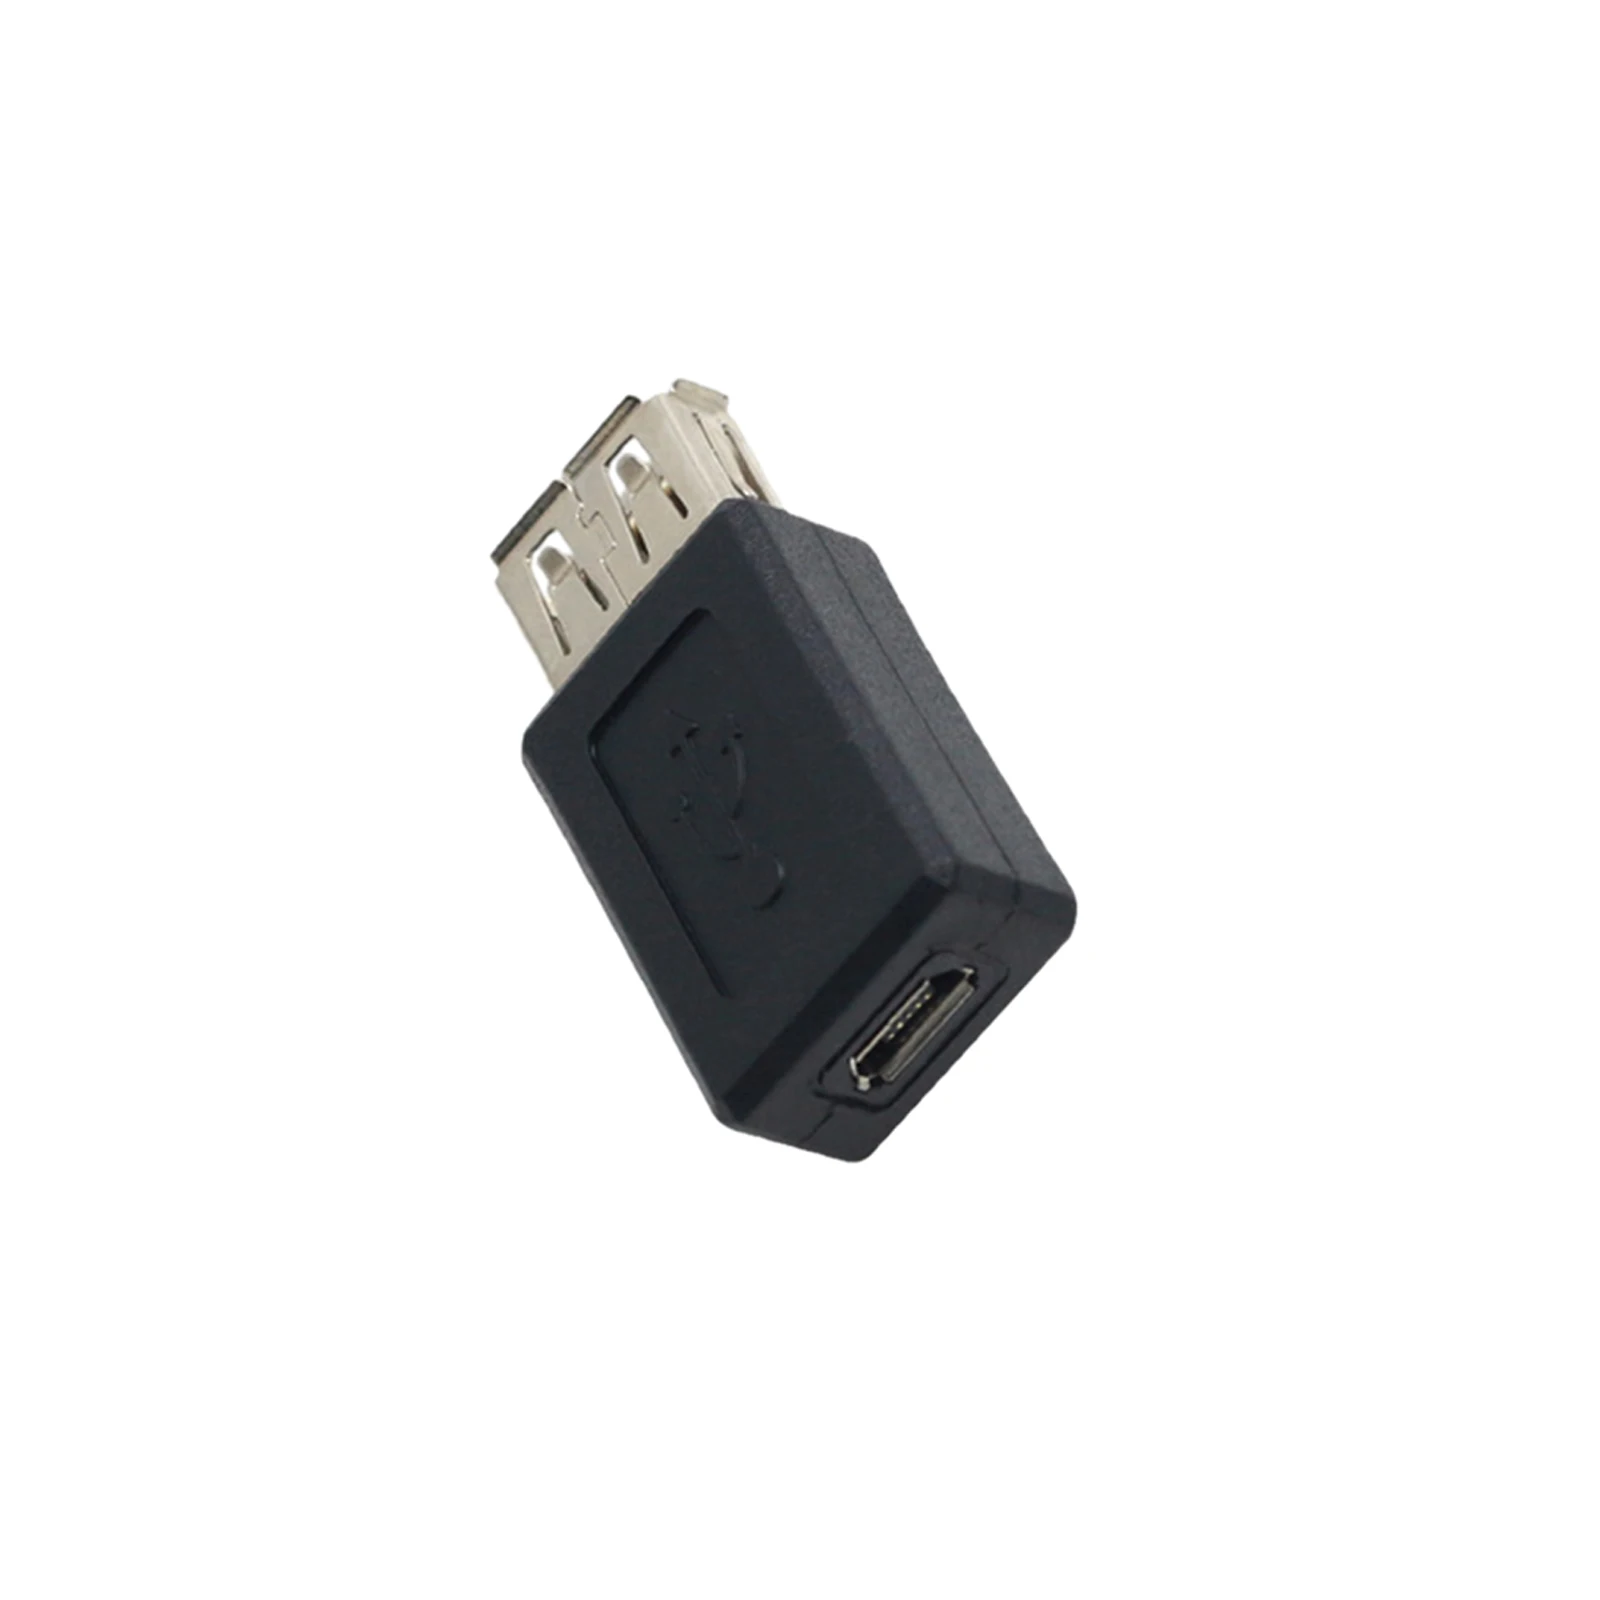 Usb към микро преносим издръжлив лесен за използване многофункционален удобен микро USB конвертор универсален USB конектор Otg адаптер USB